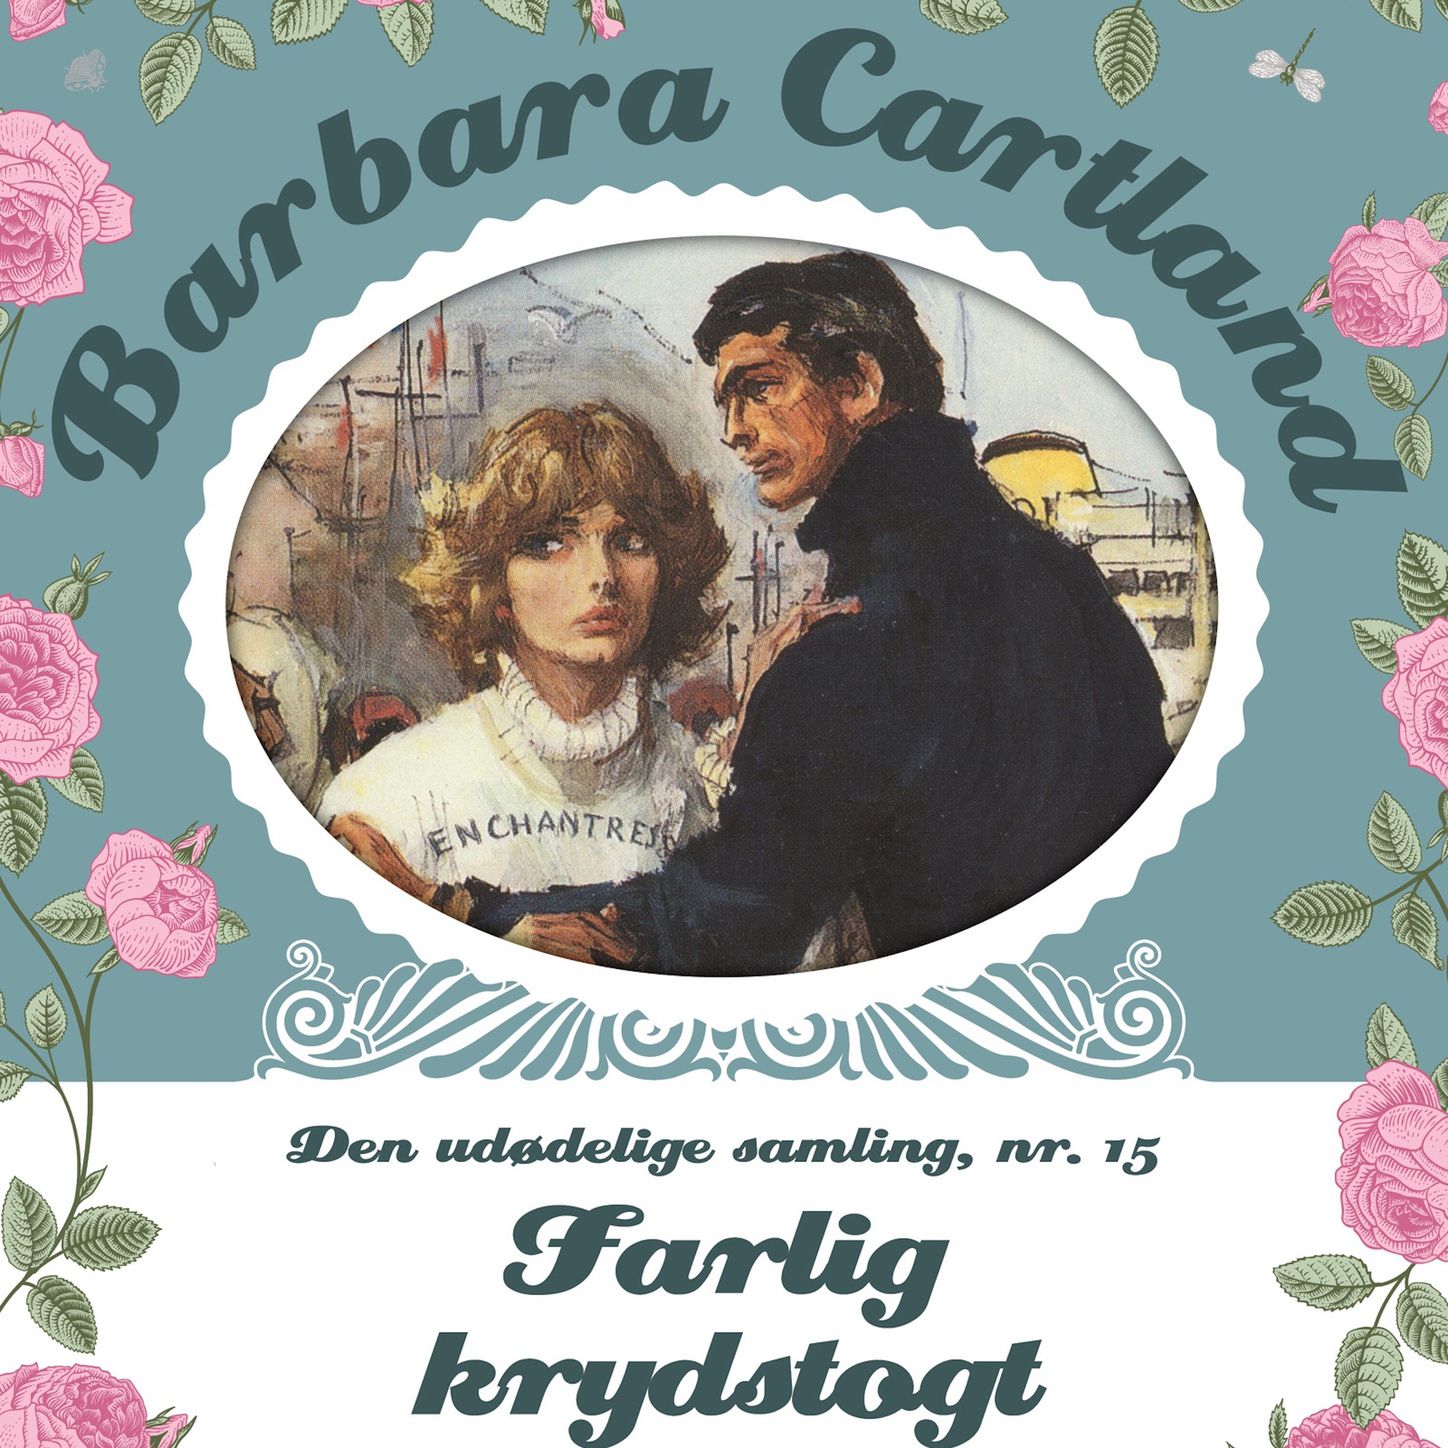 Farlig krydstogt  Barbara Cartland  Den ud delige samling 15, del028